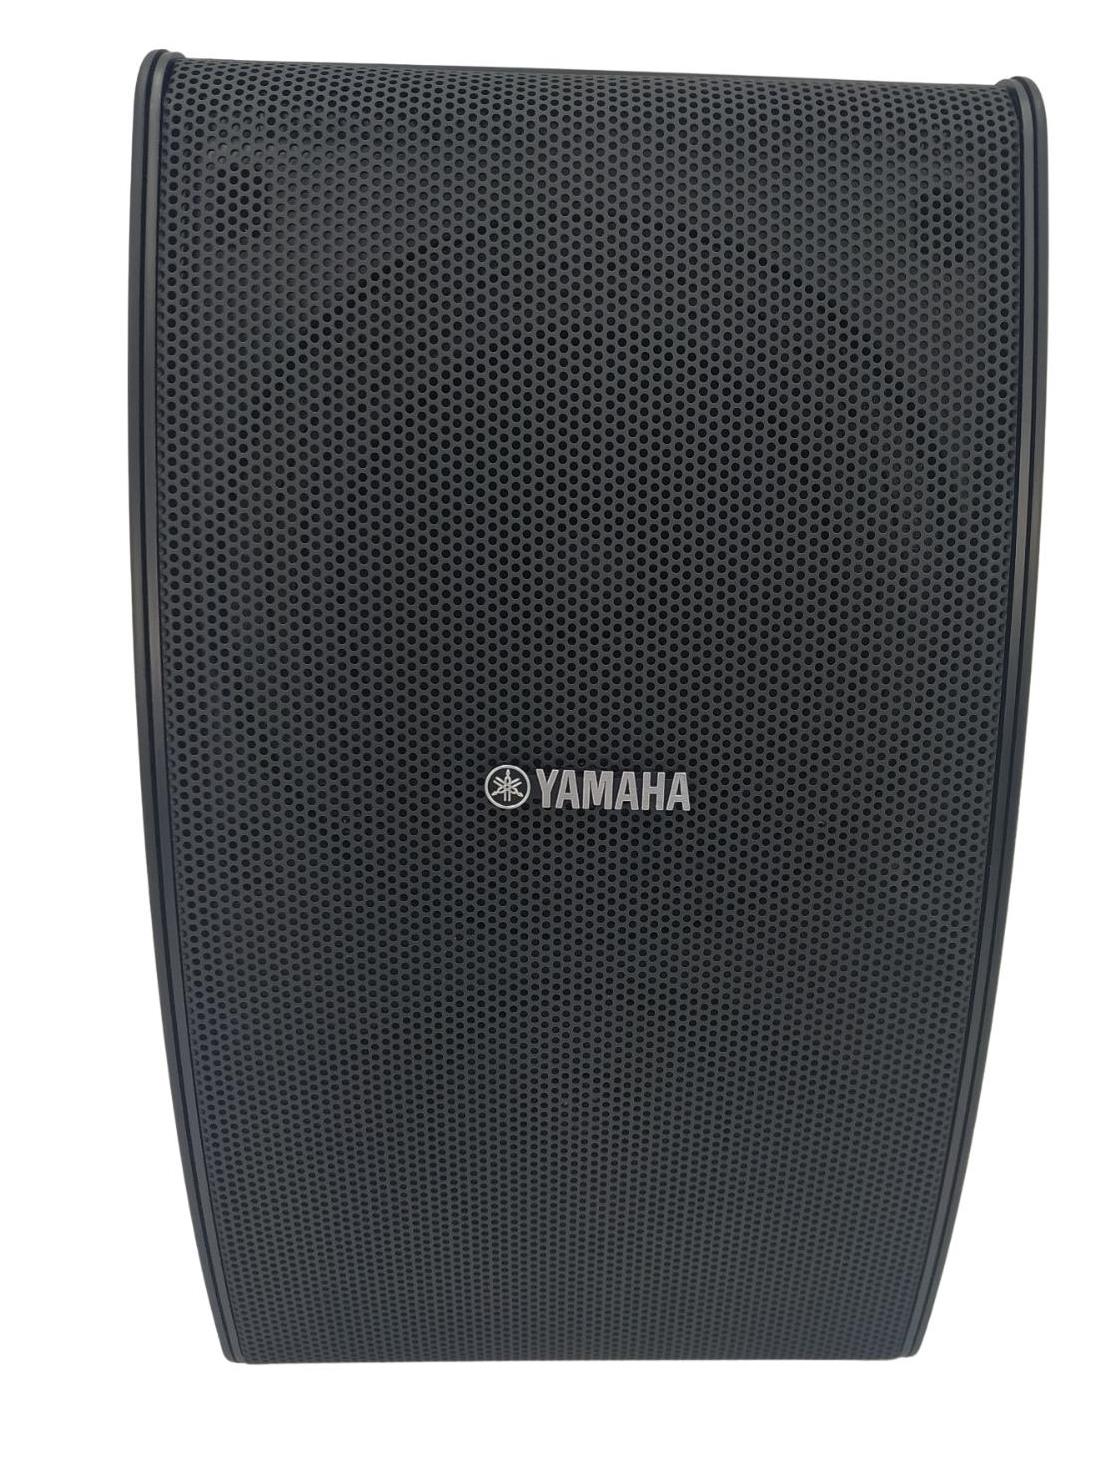 Yamaha NS-AW592 głośnik zewnętrzny czarny black 